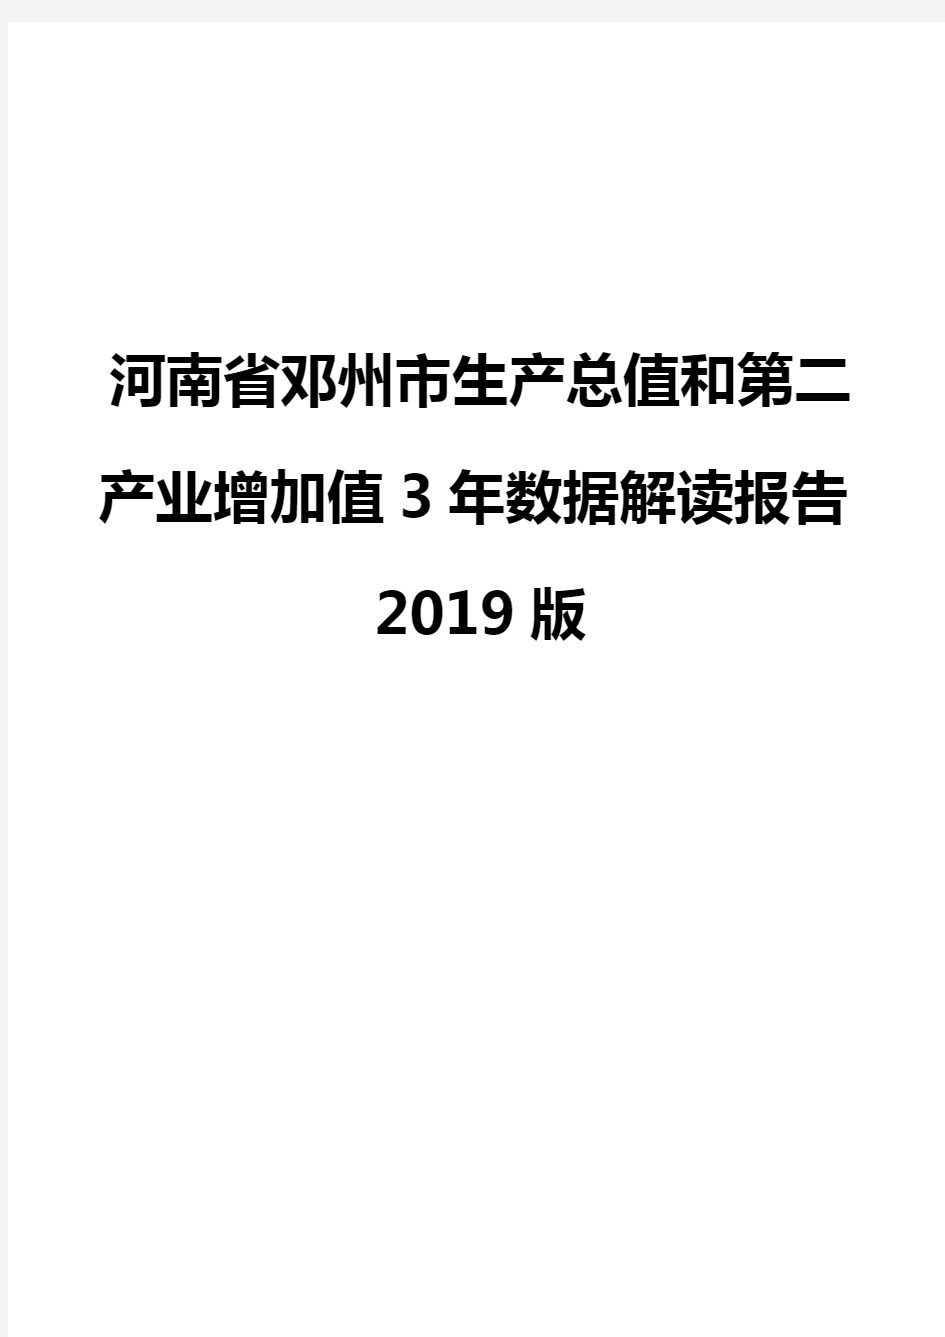 河南省邓州市生产总值和第二产业增加值3年数据解读报告2019版